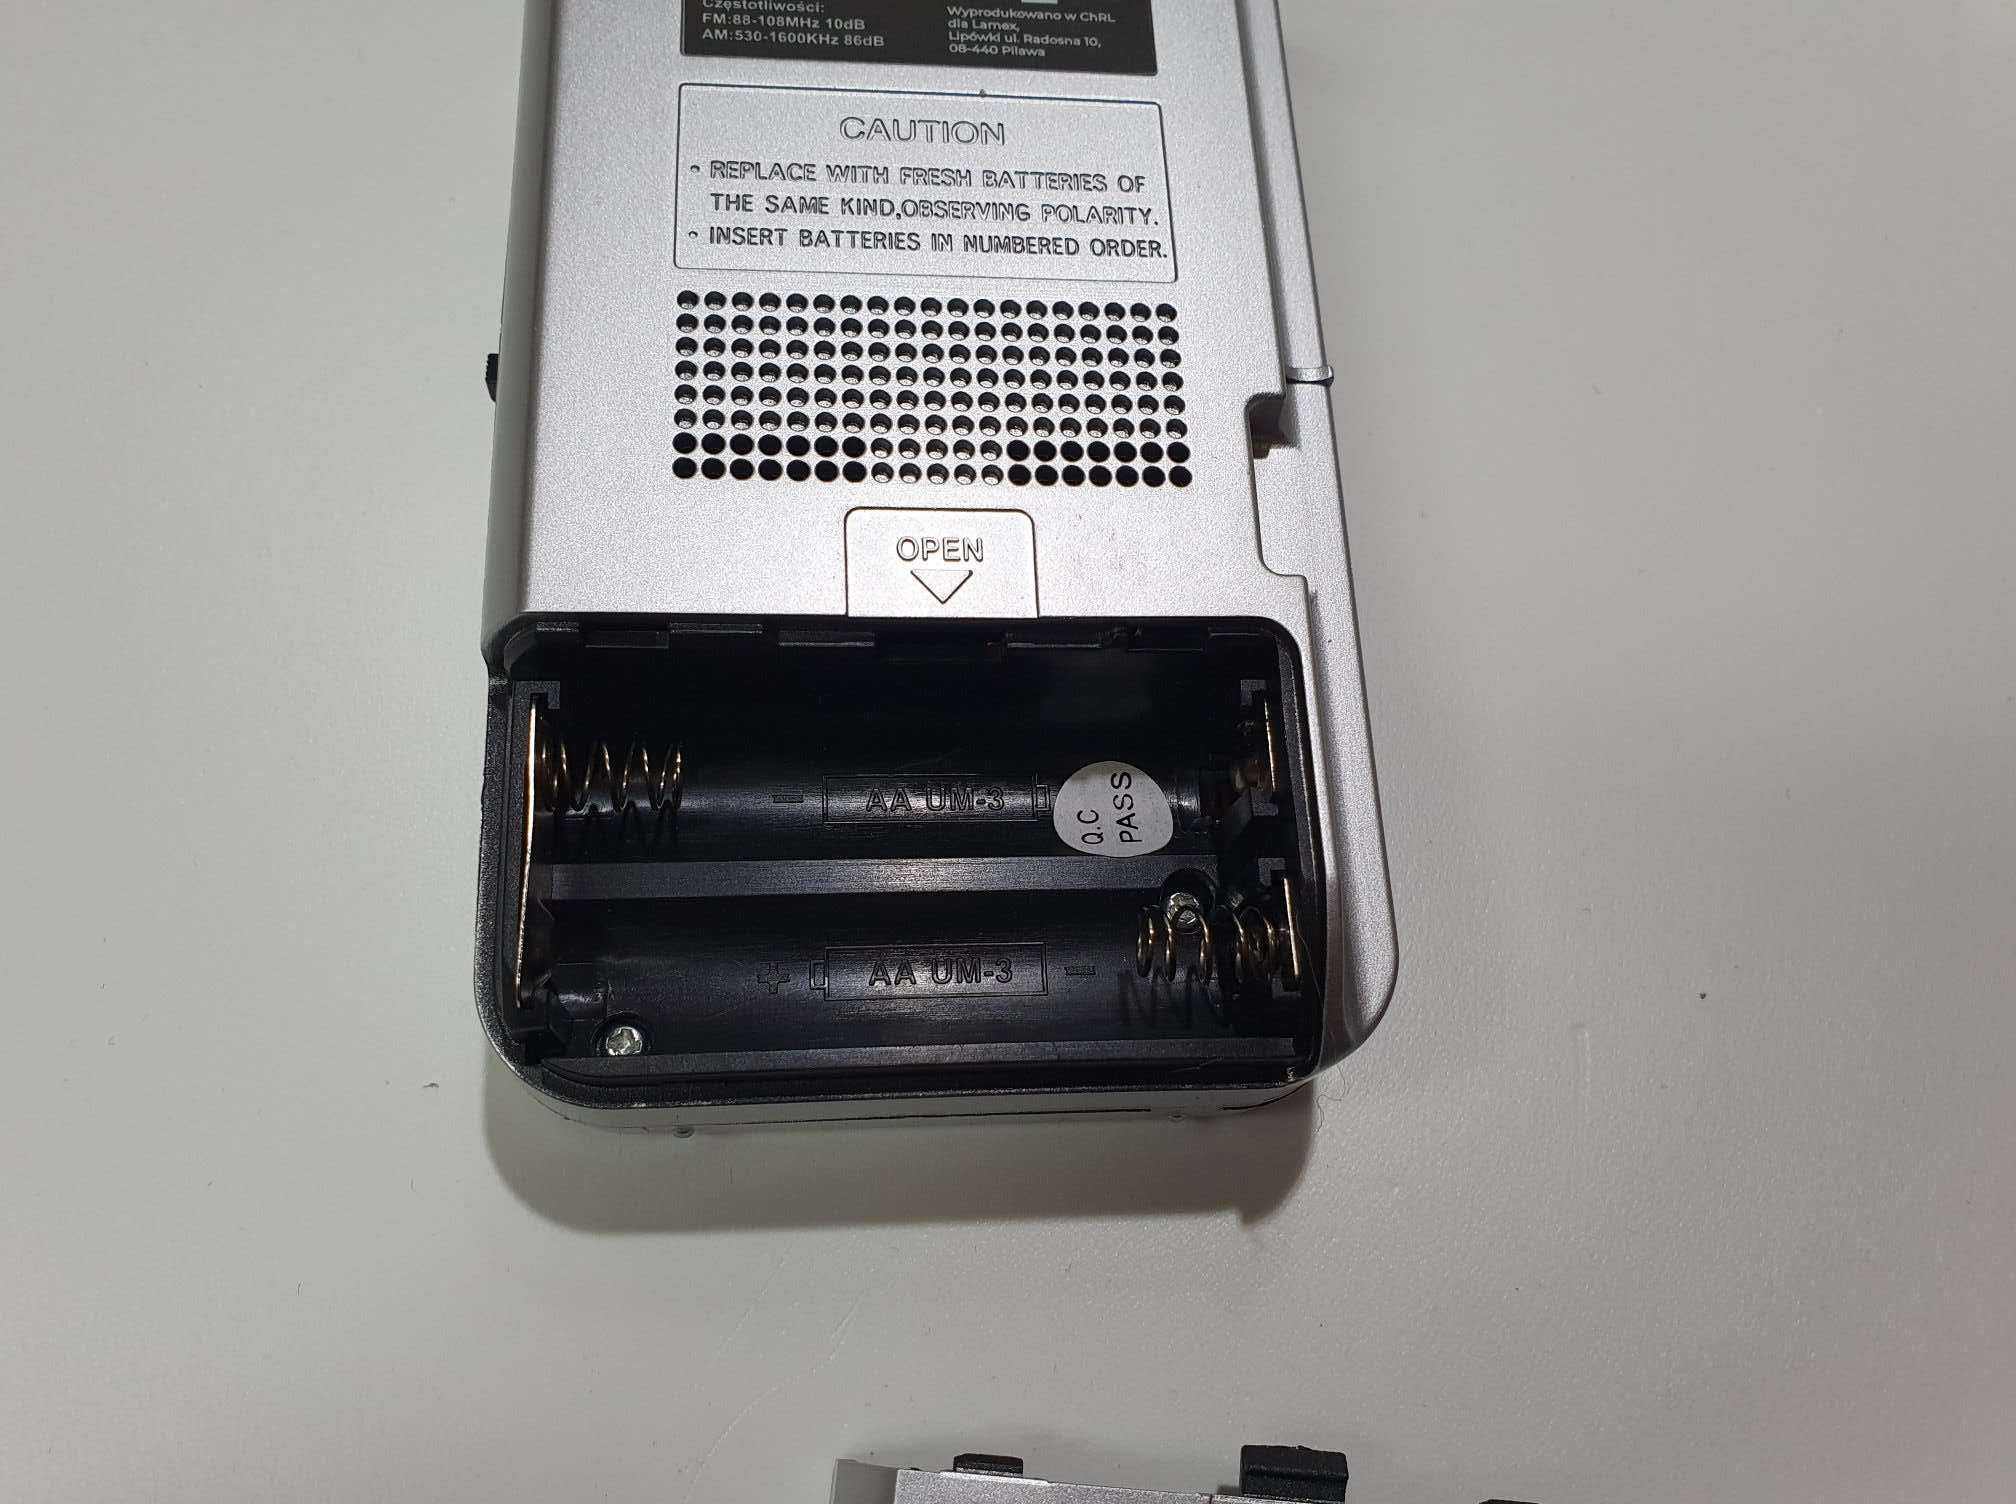 NOWE radio przenośne na baterie 2xAA mini malutkie do dłoni LTC LEGA